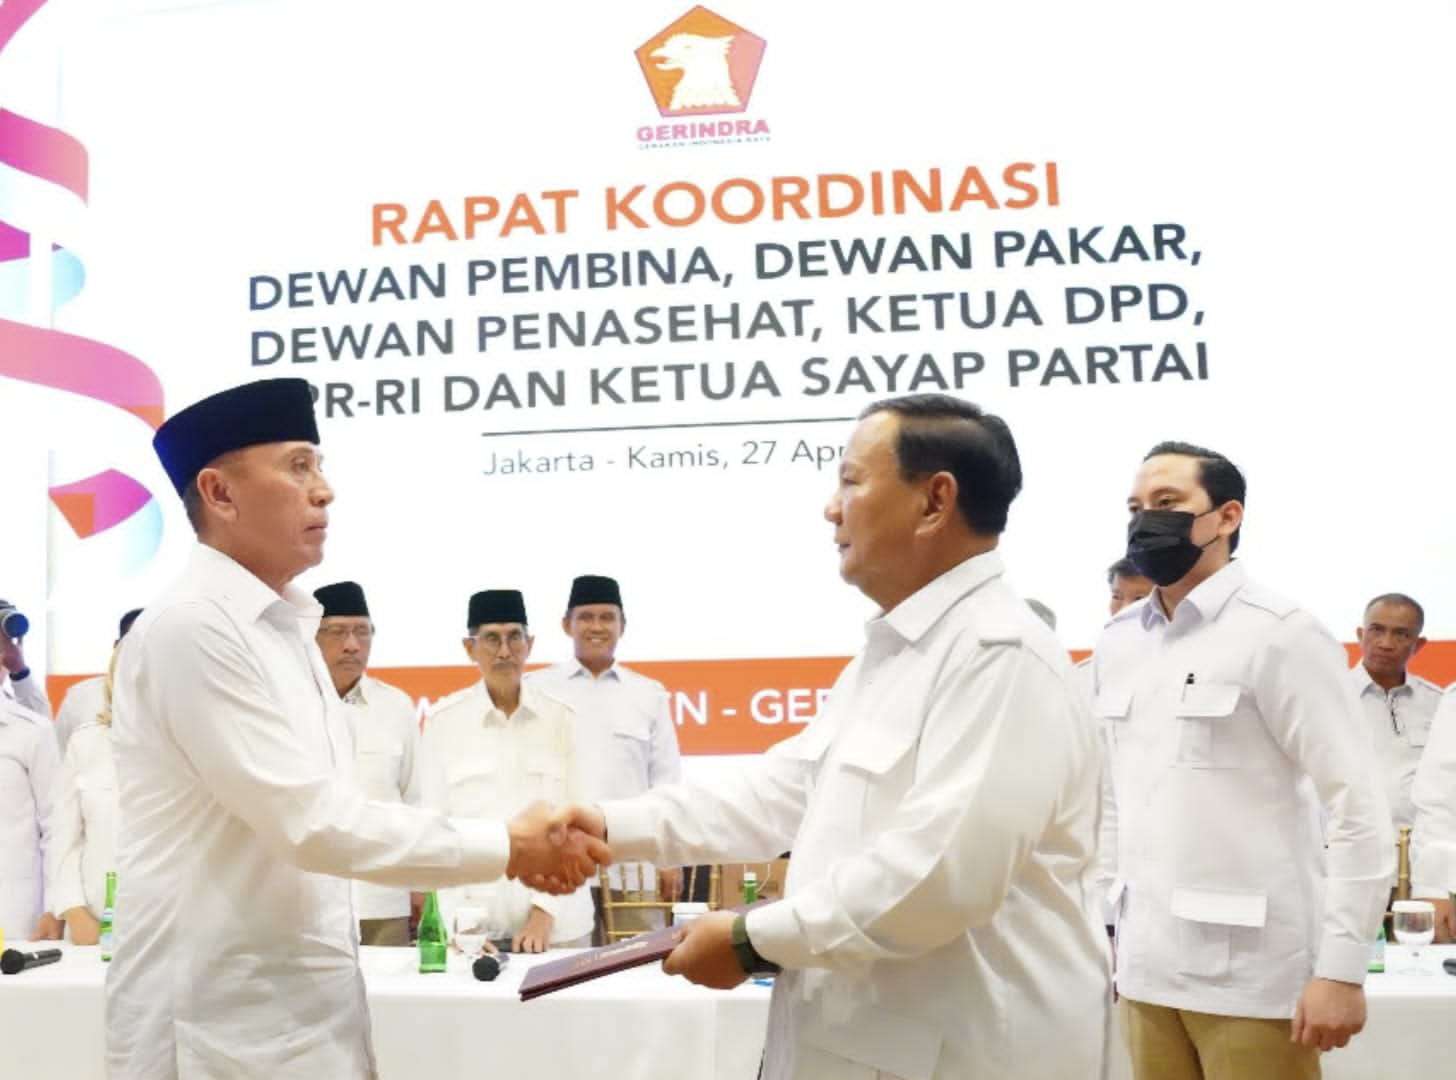 Prabowo, Pemimpin yang Mampu Menyatukan Bangsa